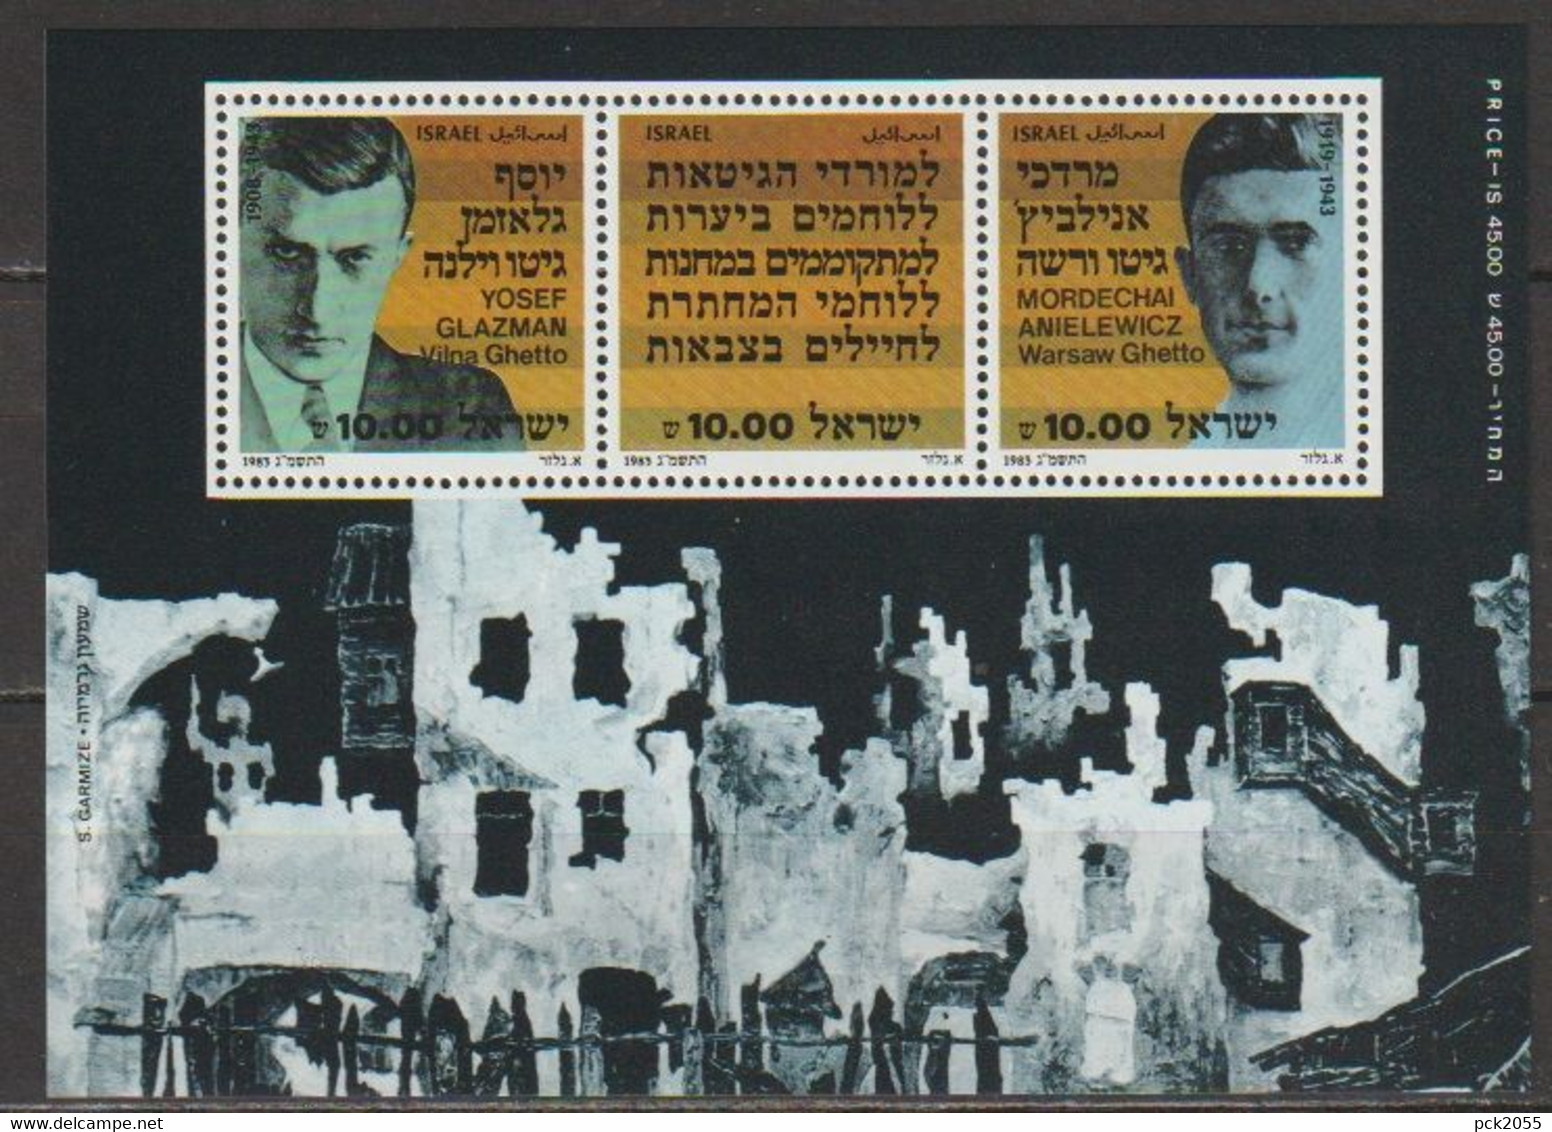 Israel 1983 Mi Nr. Block 24  ** Postfrisch  ( D3795 )günstige Versandkosten - Blocs-feuillets